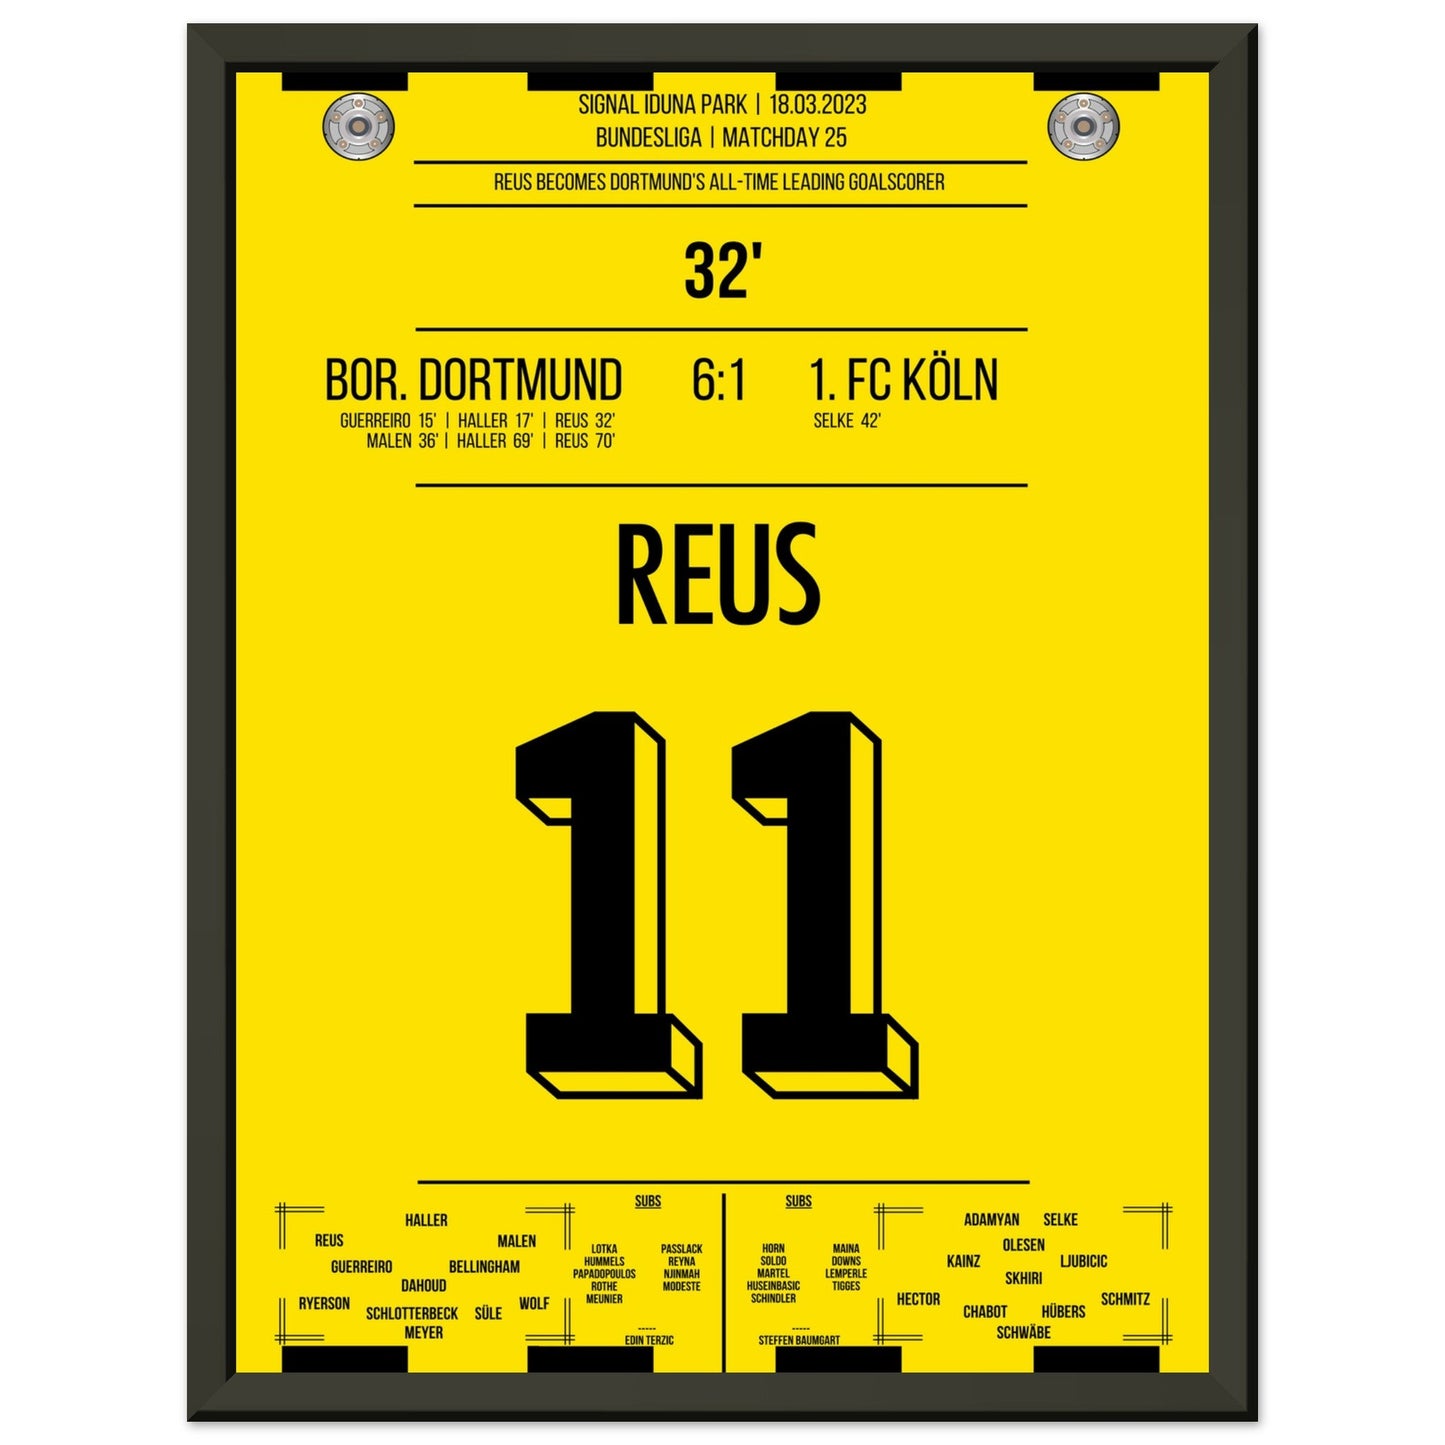 Reus' Rekord-Tor gegen Köln in 2023